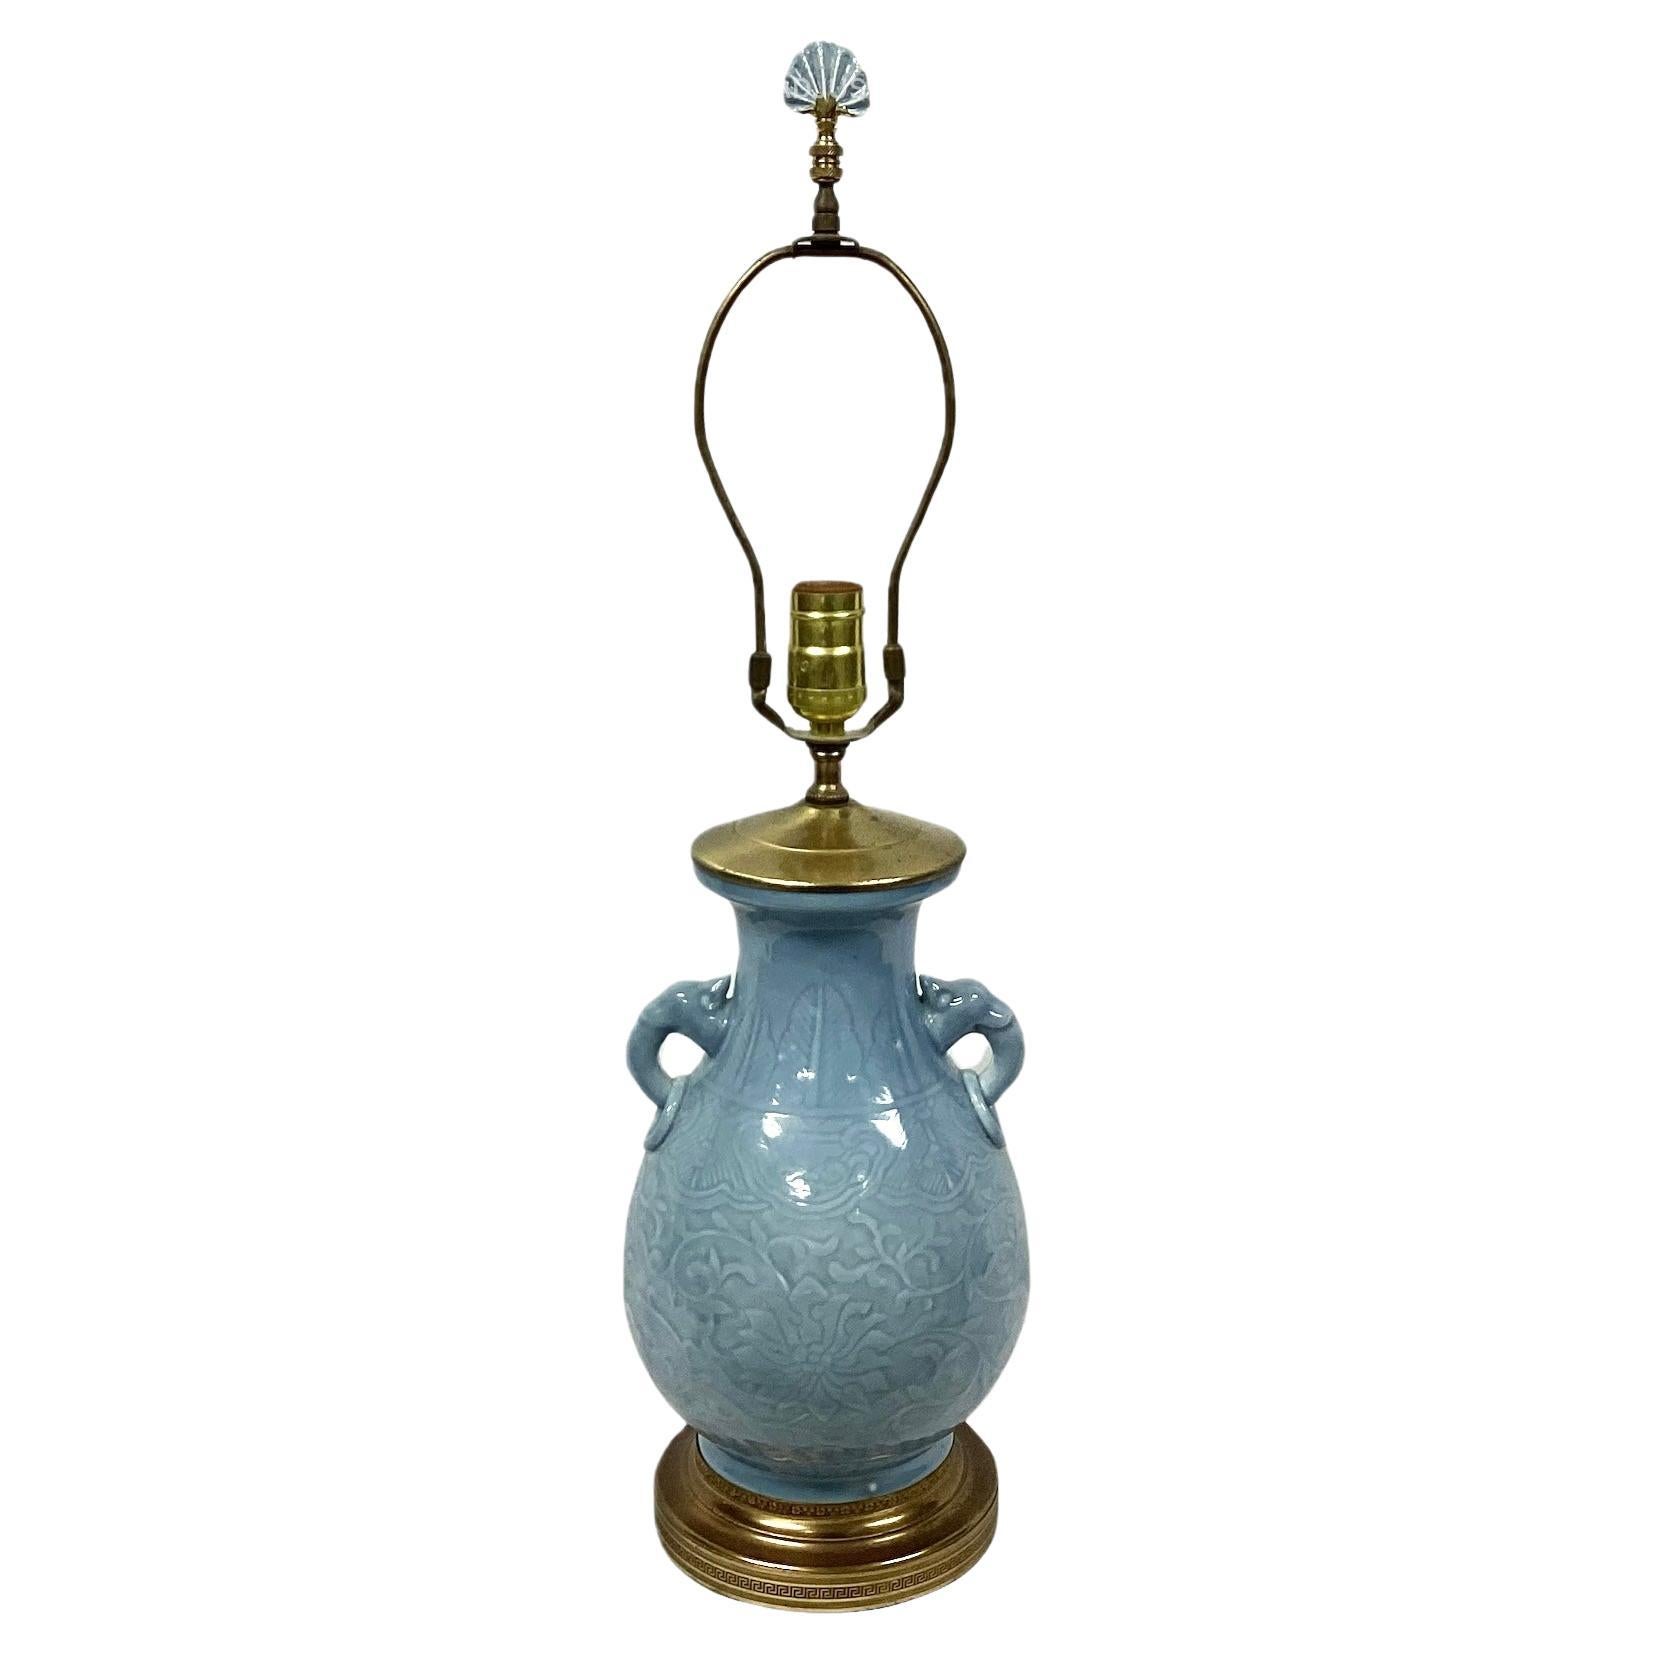  Chinesische Lampe aus Celadon-Porzellan mit vergoldetem Messingbeschlägen